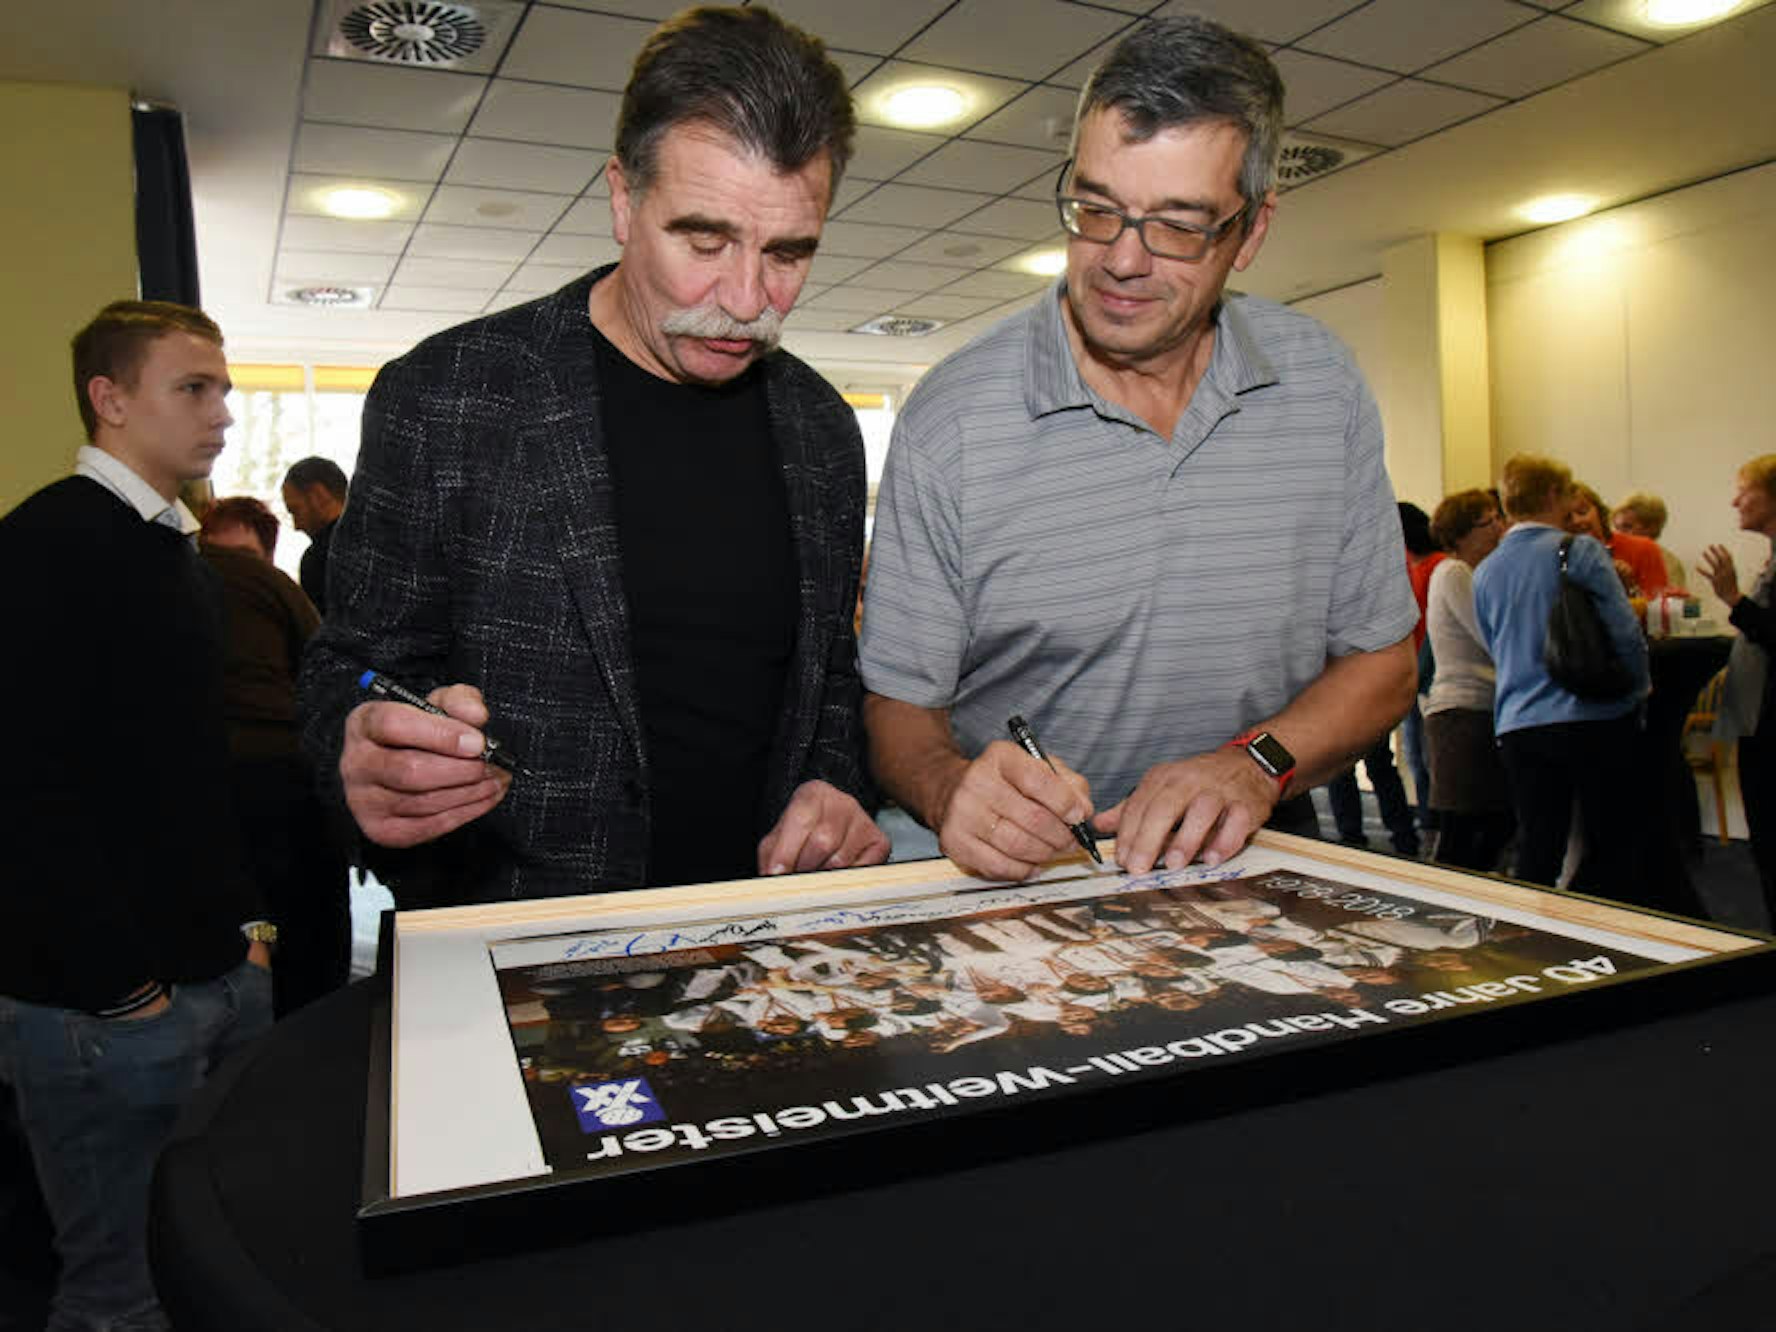 Signierten gemeinsam das Mannschaftsfoto des Weltmeisterteams von 1978: Claus Fey (r.) und Heiner Brand.